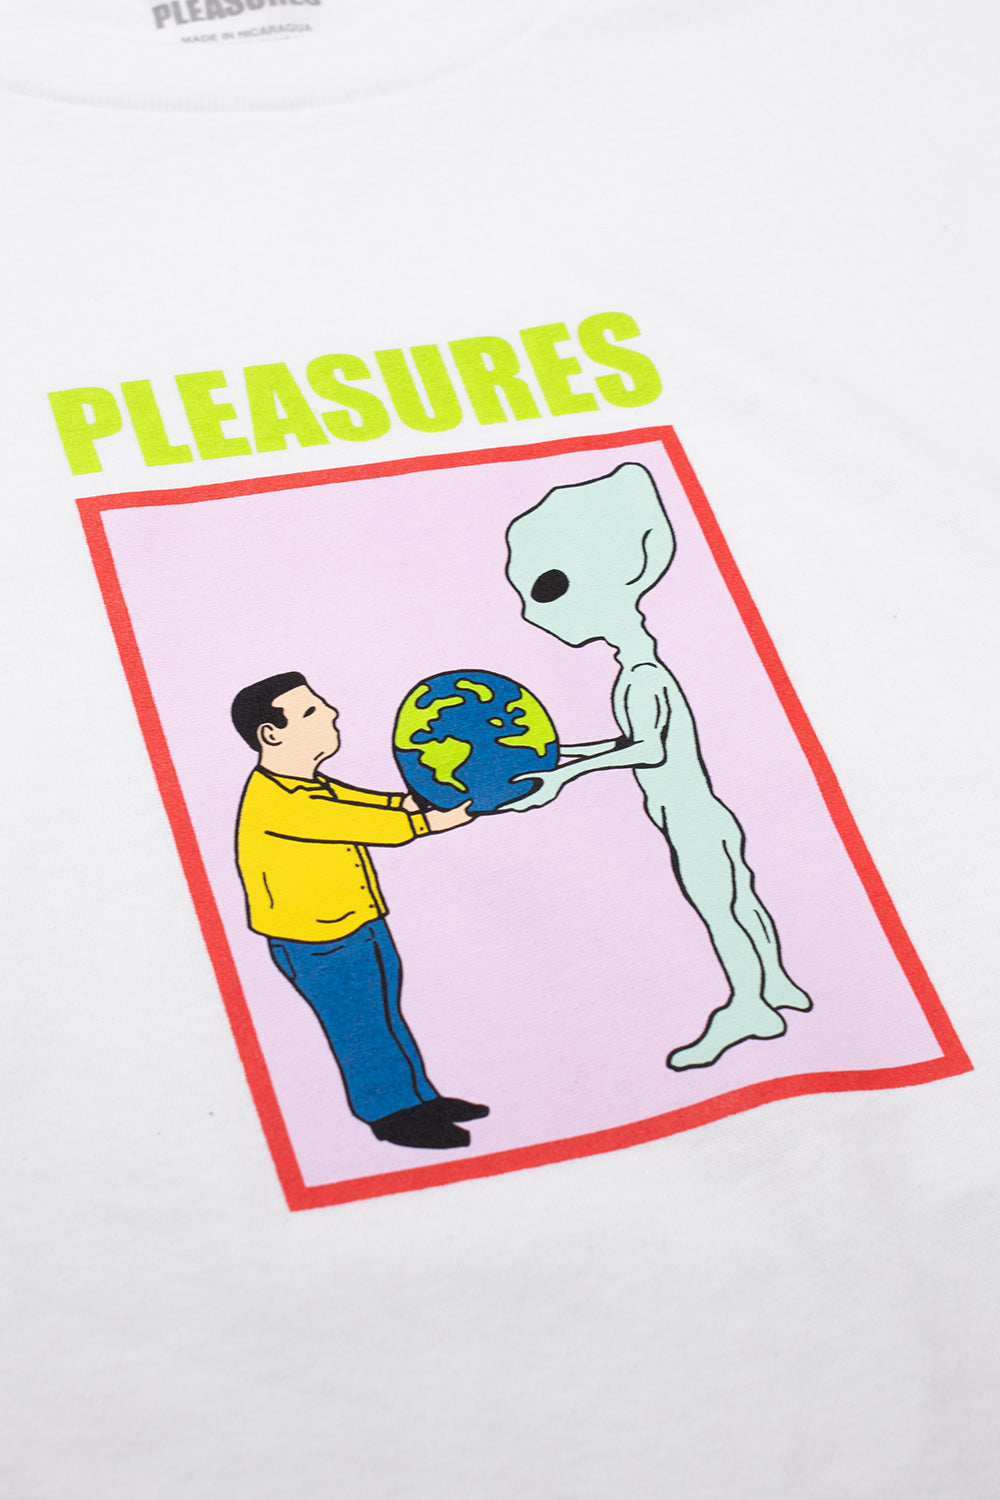 Pleasures Gift T-Shirt White - BONKERS